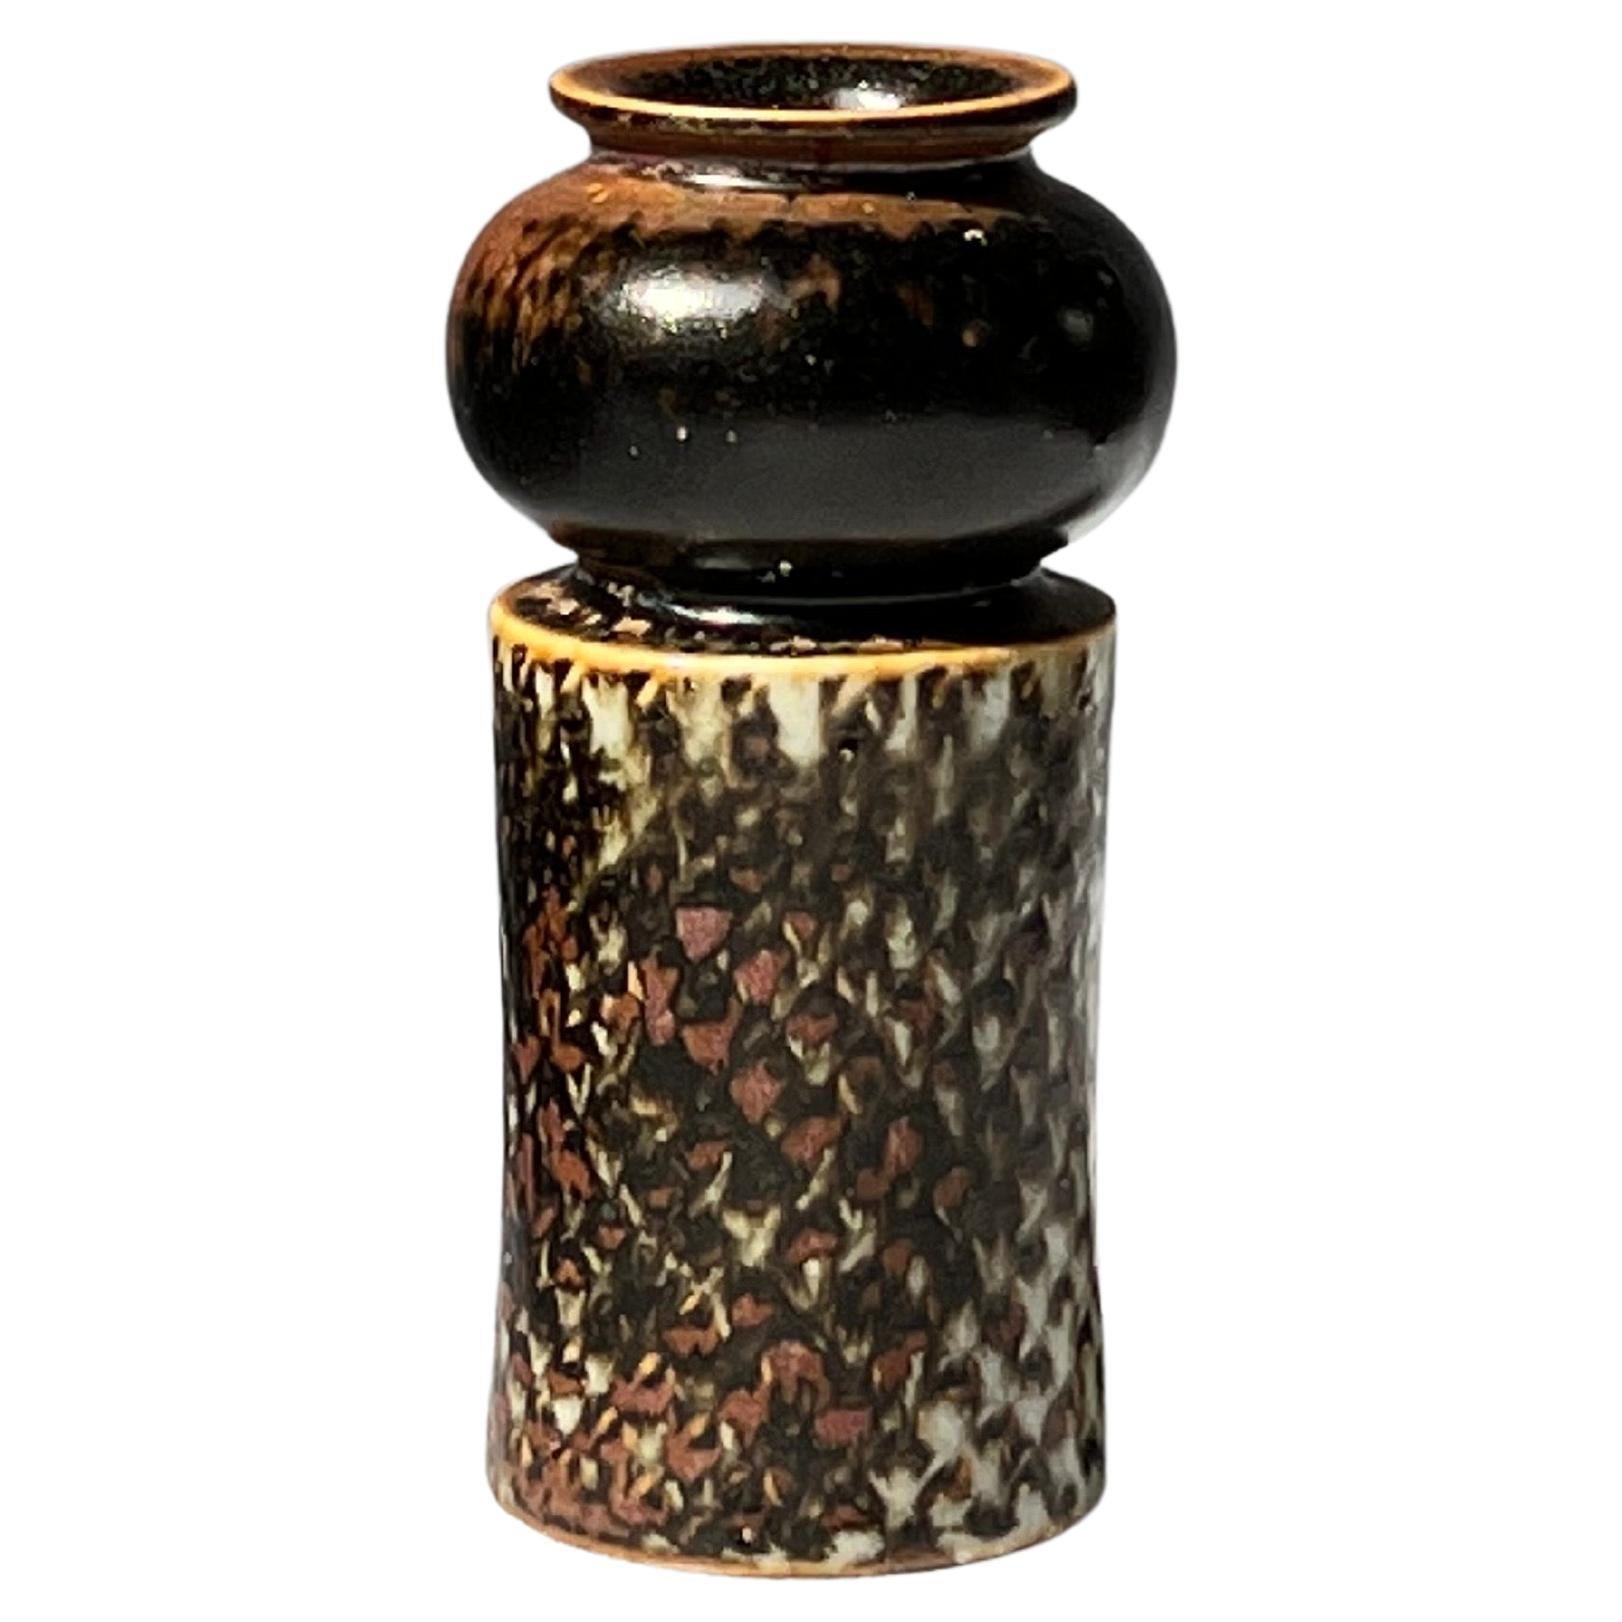 Stig Lindberg Unique Vase in black Glaze Tenmoku Made by Hand Sweden 1964